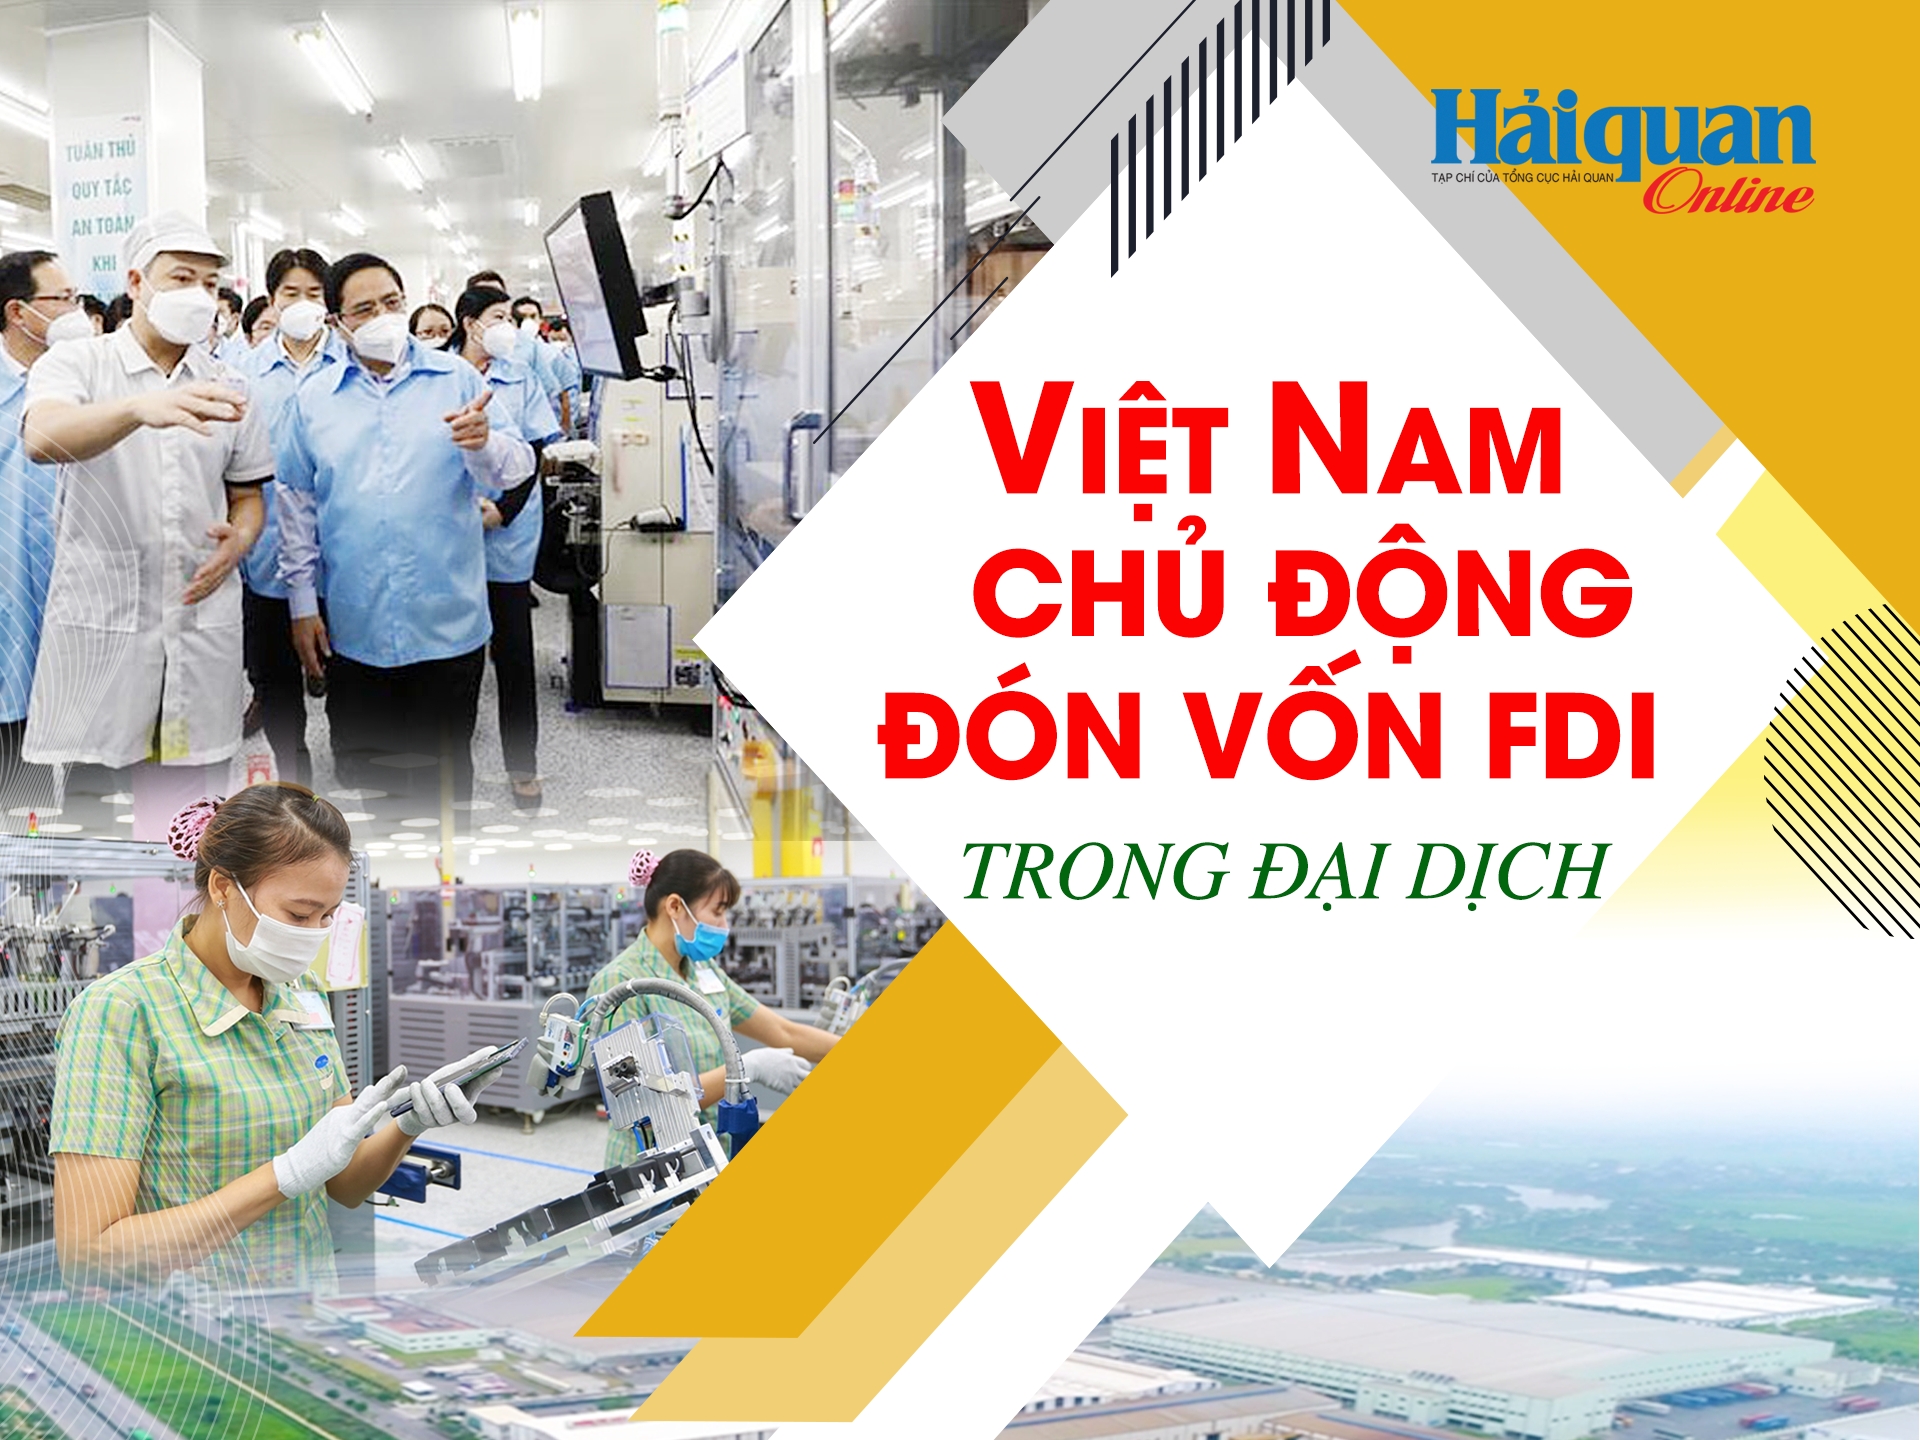 MEGASTORY: Việt Nam chủ động đón vốn FDI trong đại dịch